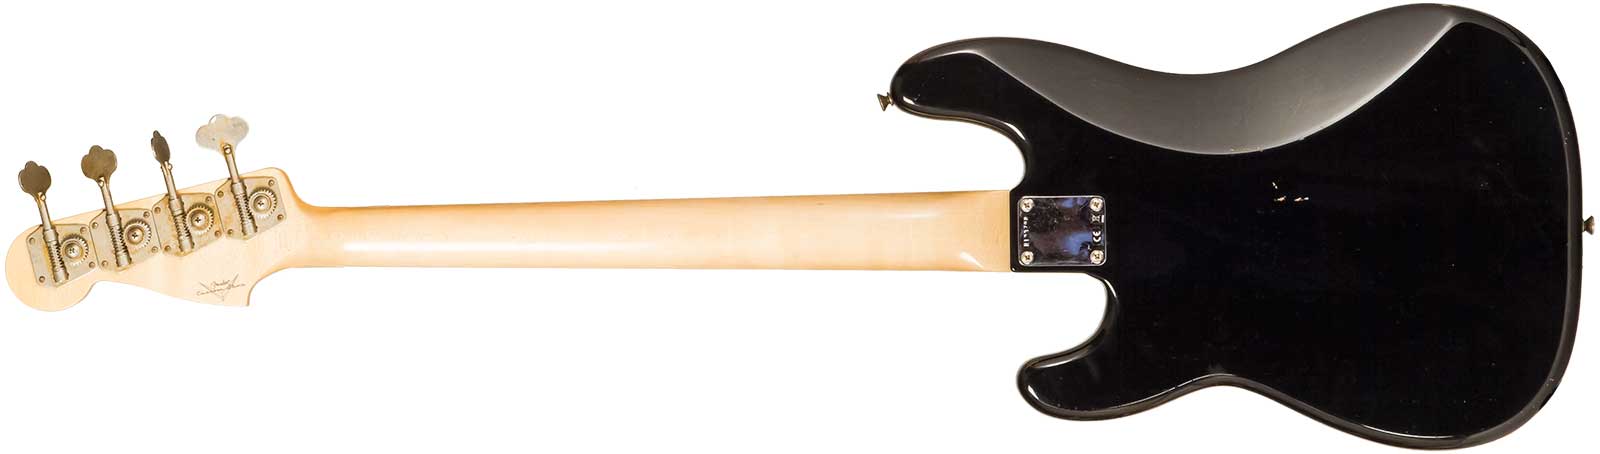 Fender Custom Shop Precision Bass 1962 Rw #r133798 - Journey Man Relic Black - Bajo eléctrico de cuerpo sólido - Variation 1